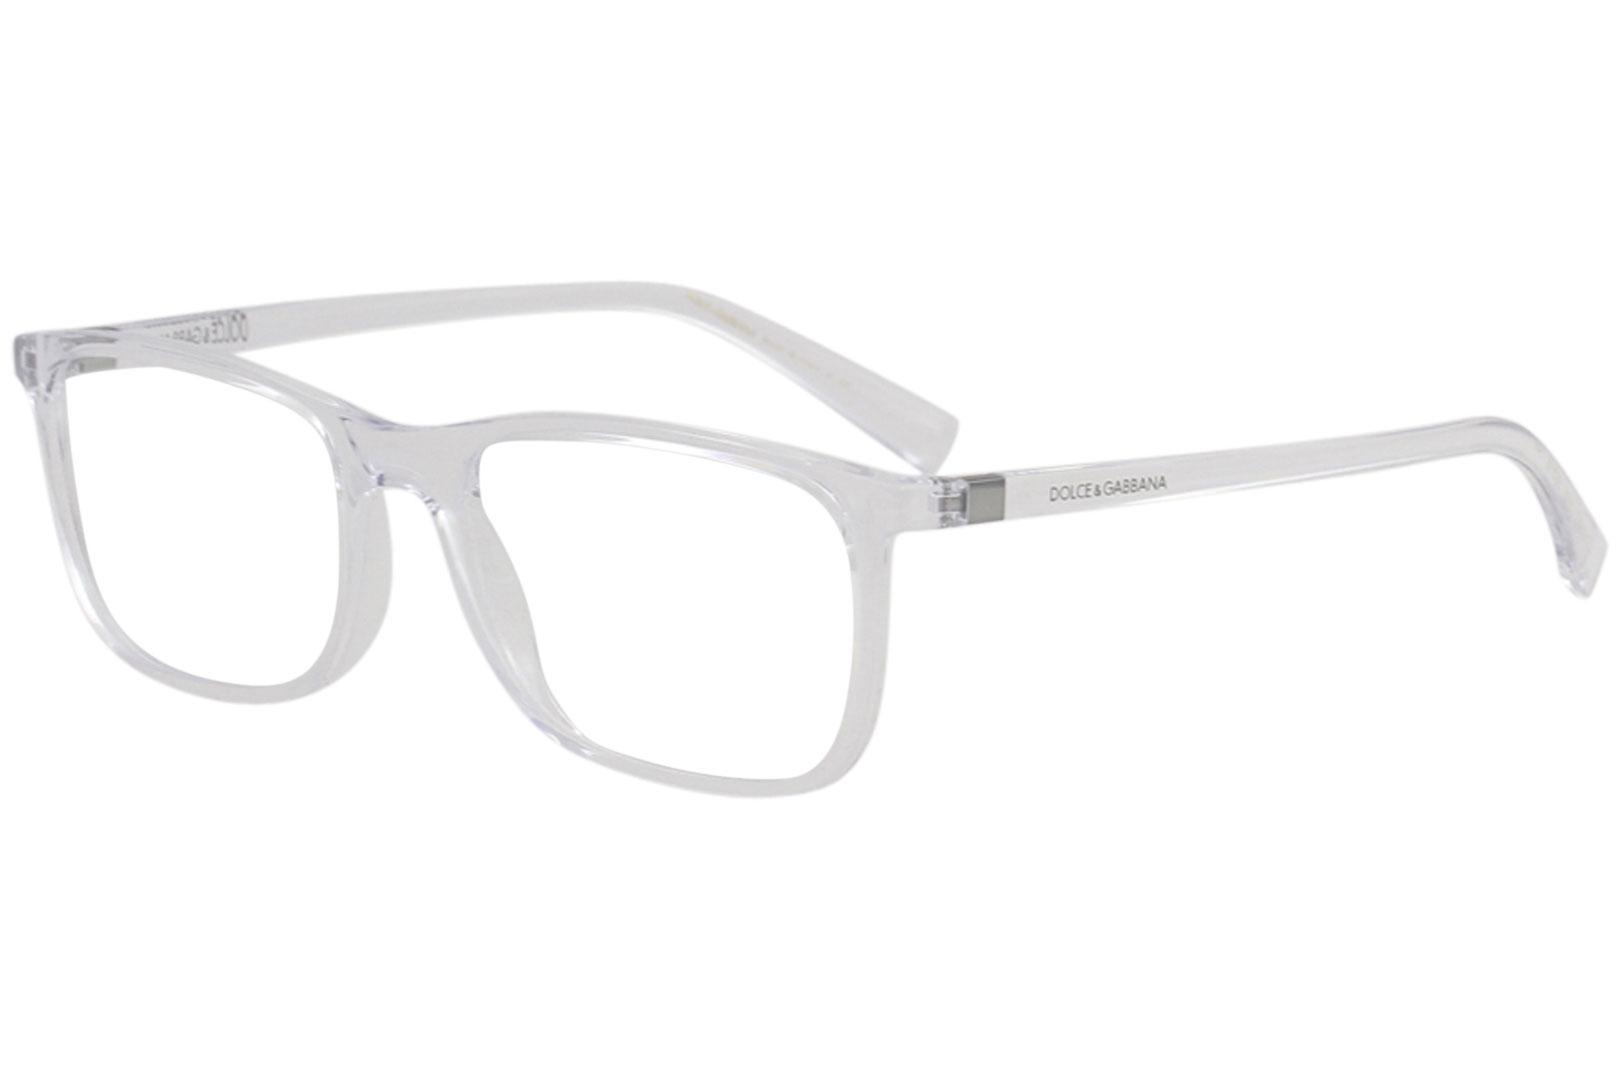 Dolce & Gabbana Men's Eyeglasses D&G DG5027 DG/5027 Full Rim Optical Frame - Crystal   3133 - Lens 55 Bridge 18 B 39.8 ED 59.1 Temple 140mm